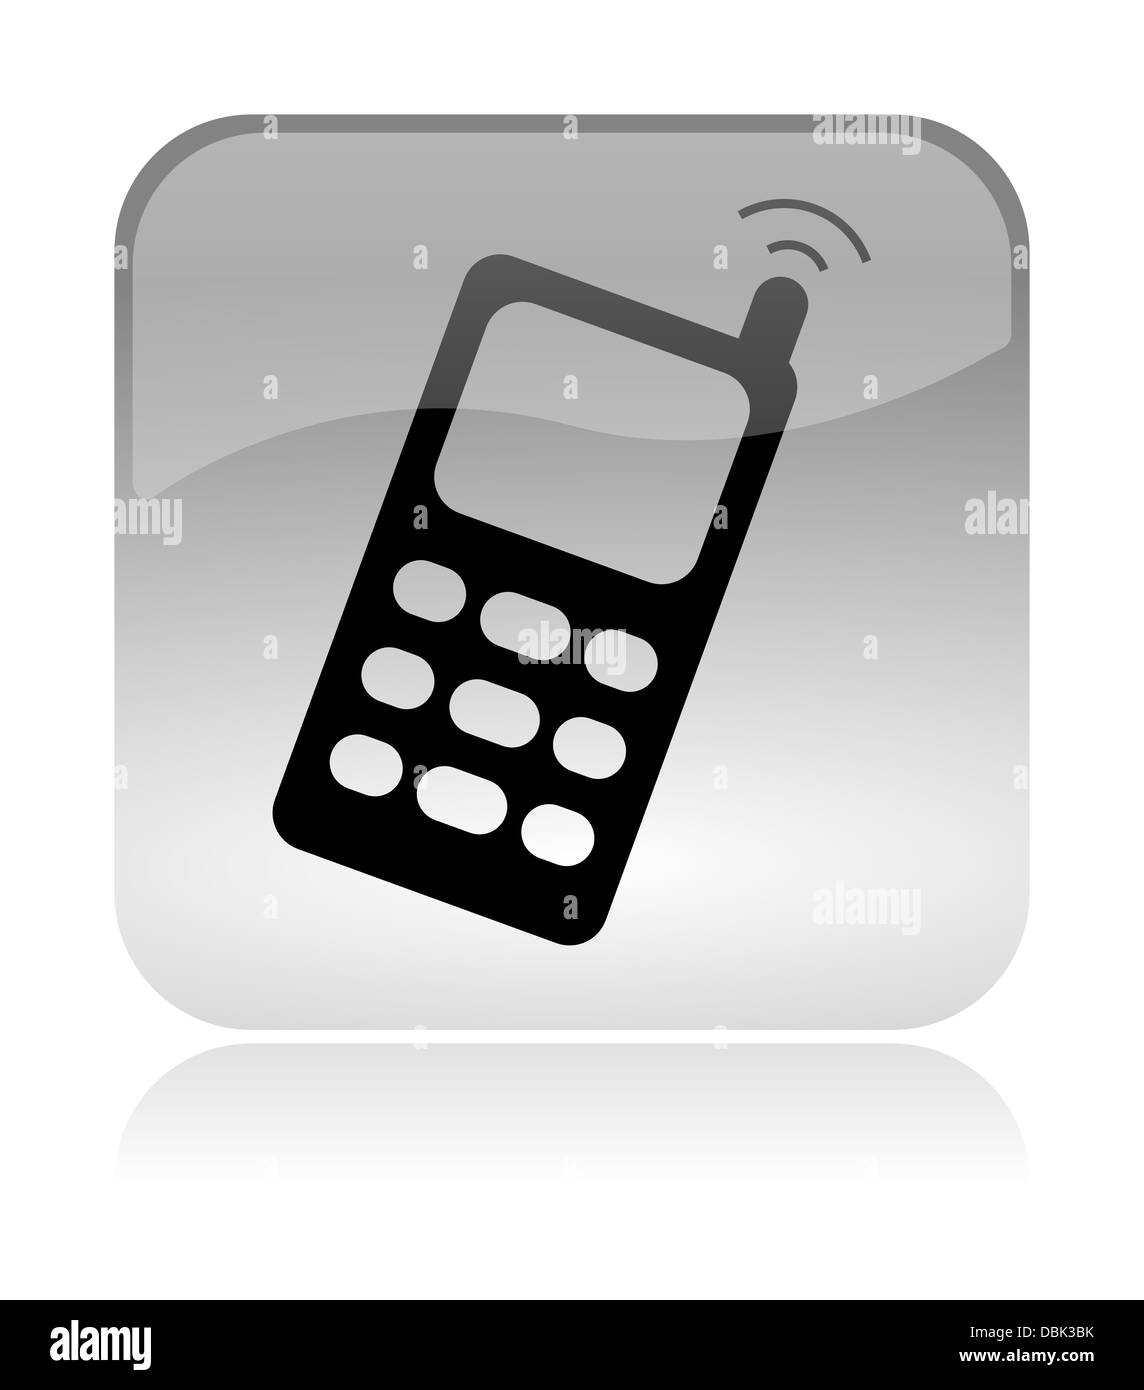 Téléphone mobile cellulaire blanc, transparent et brillant sur l'icône de l'interface web avec réflexion Banque D'Images